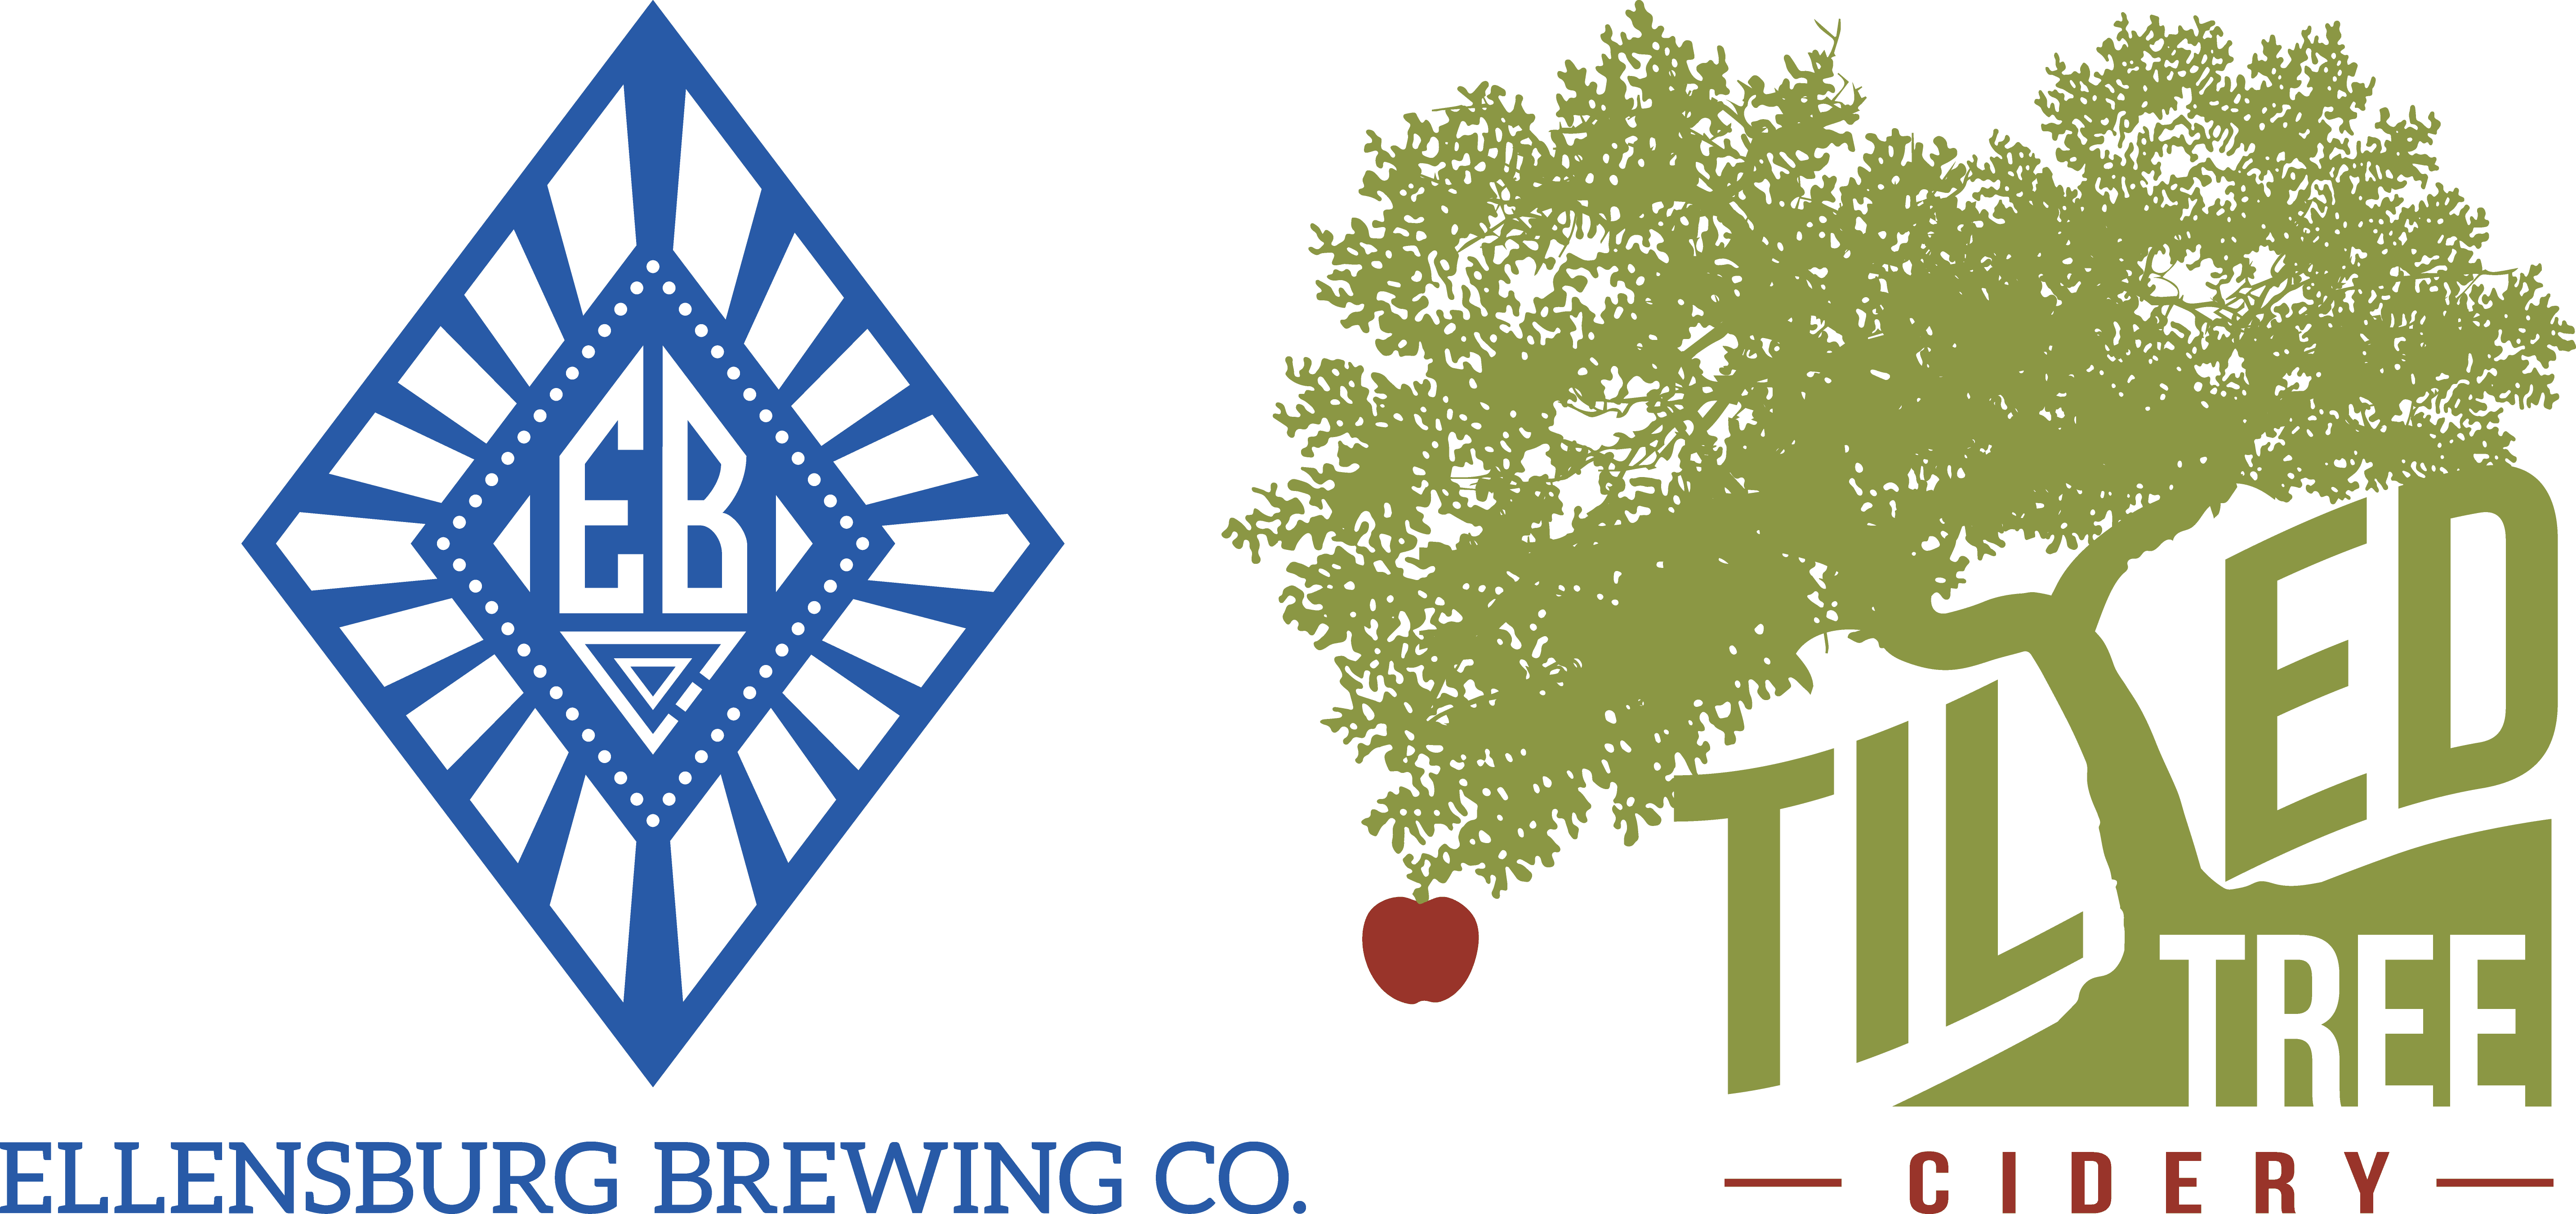 Ellensburg Brewery & Tilted Tree Cidery